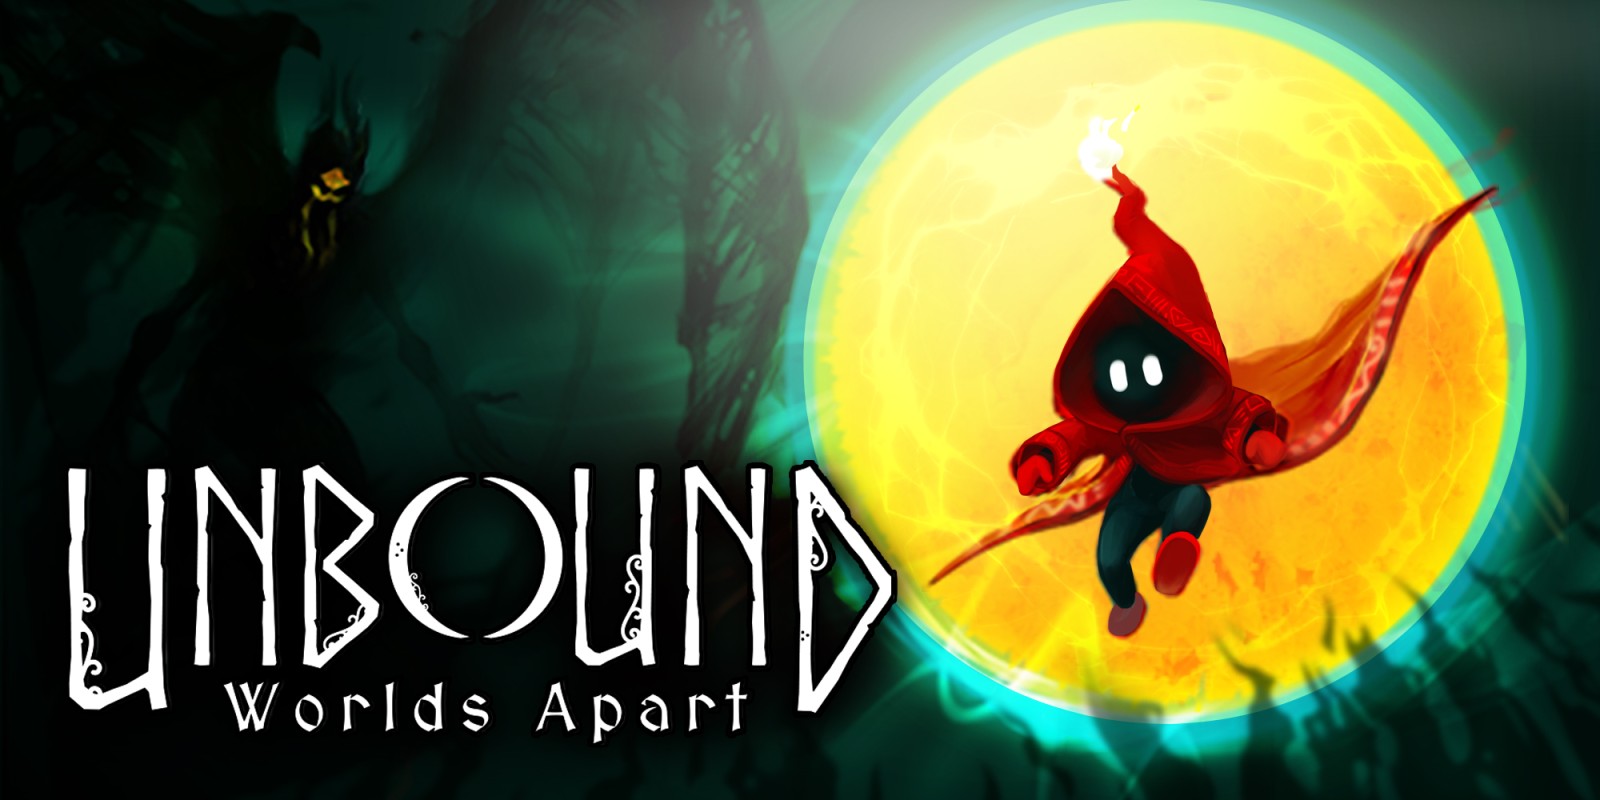 unbound worlds apart kickstarter